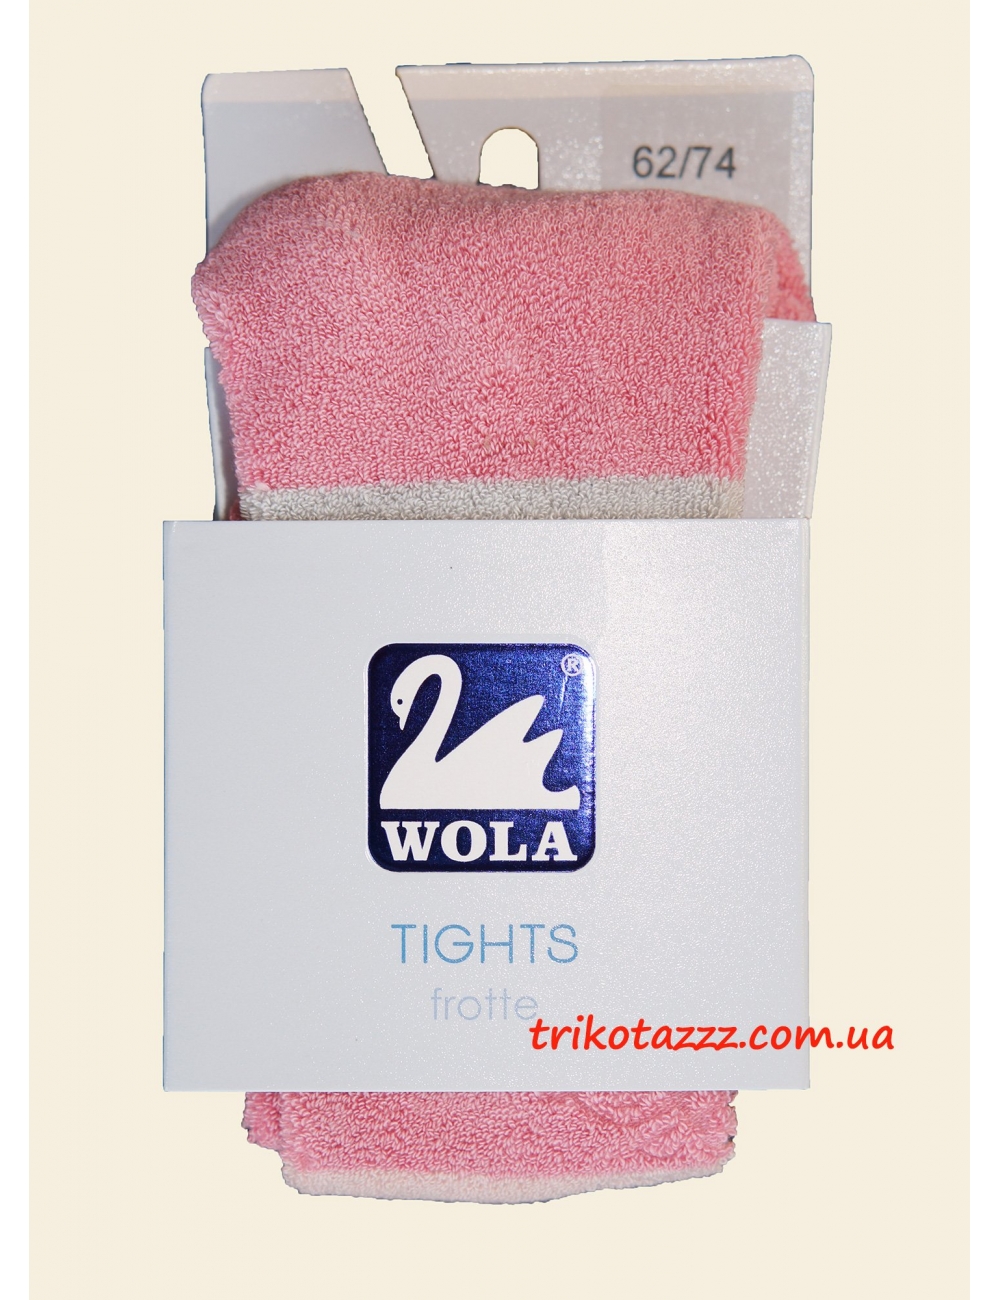 Колготки махровые двусторонние для девочки тм "Wola" розовые сполосками